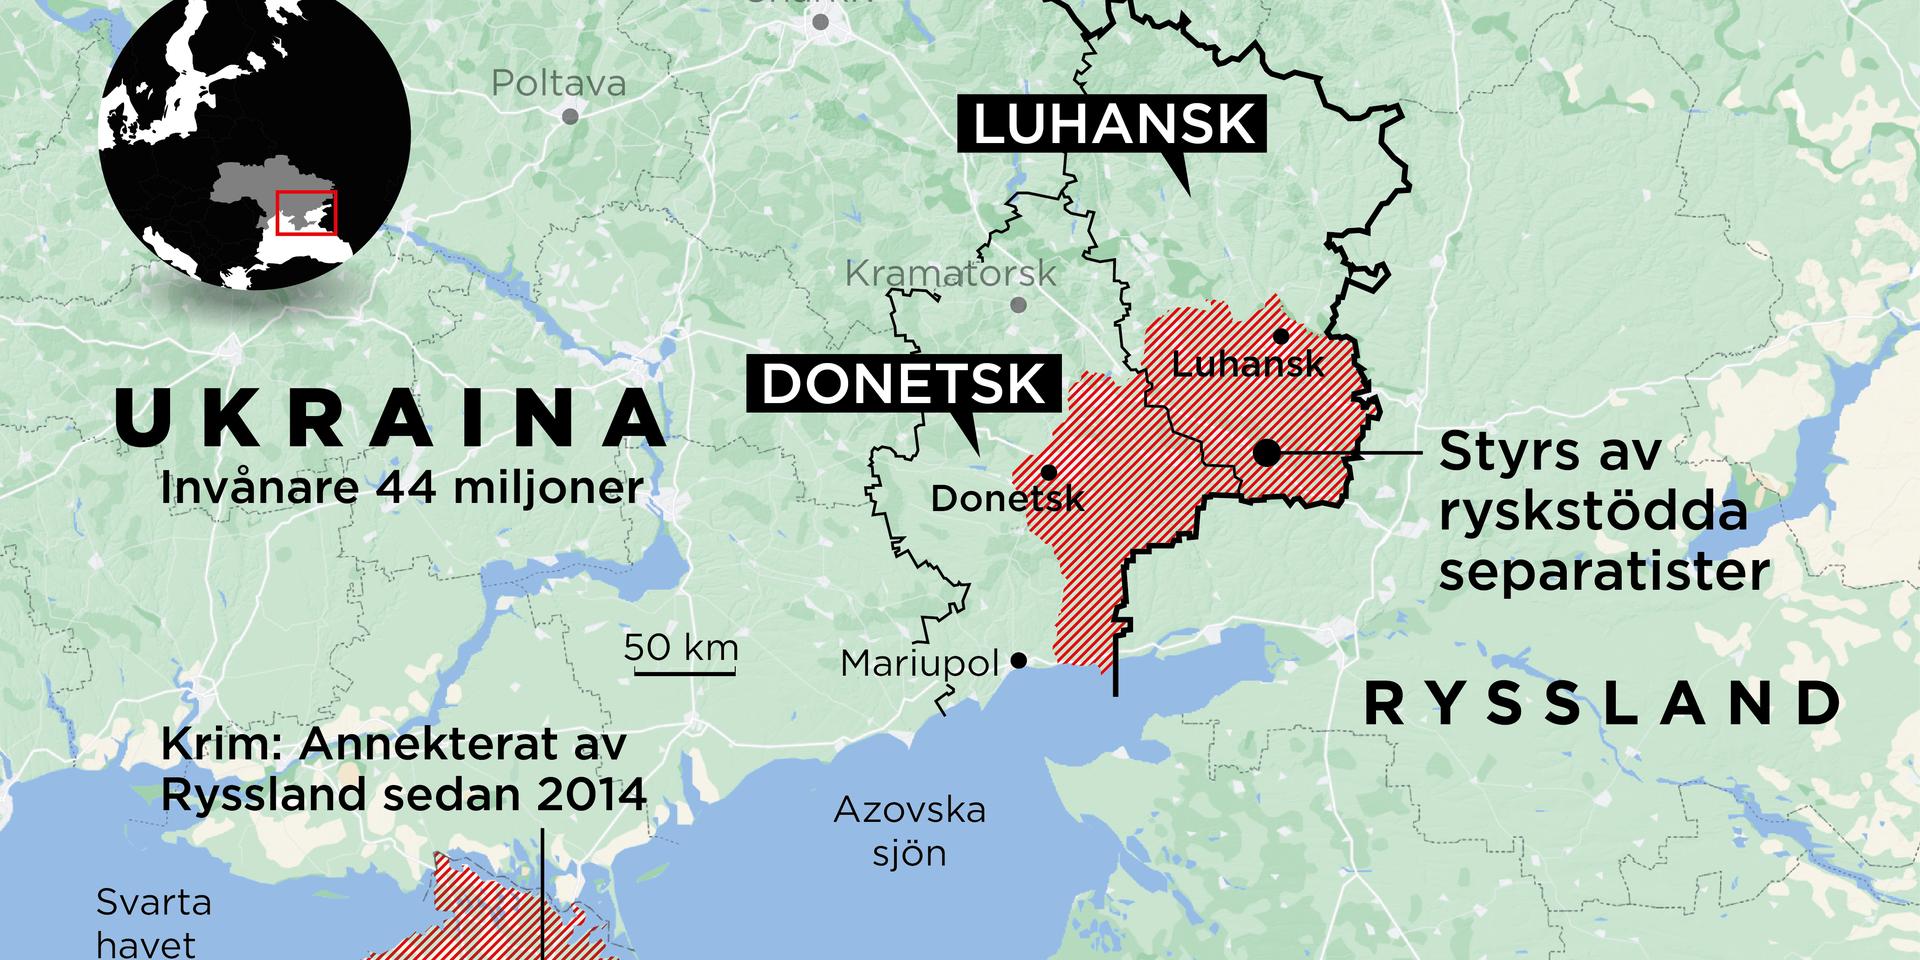 Karta över området. Voronezj, där Anna-Lena Laurén befinner sig ligger i sydvästra Ryssland, knappt 30 mil från gränsen till Luhansk.